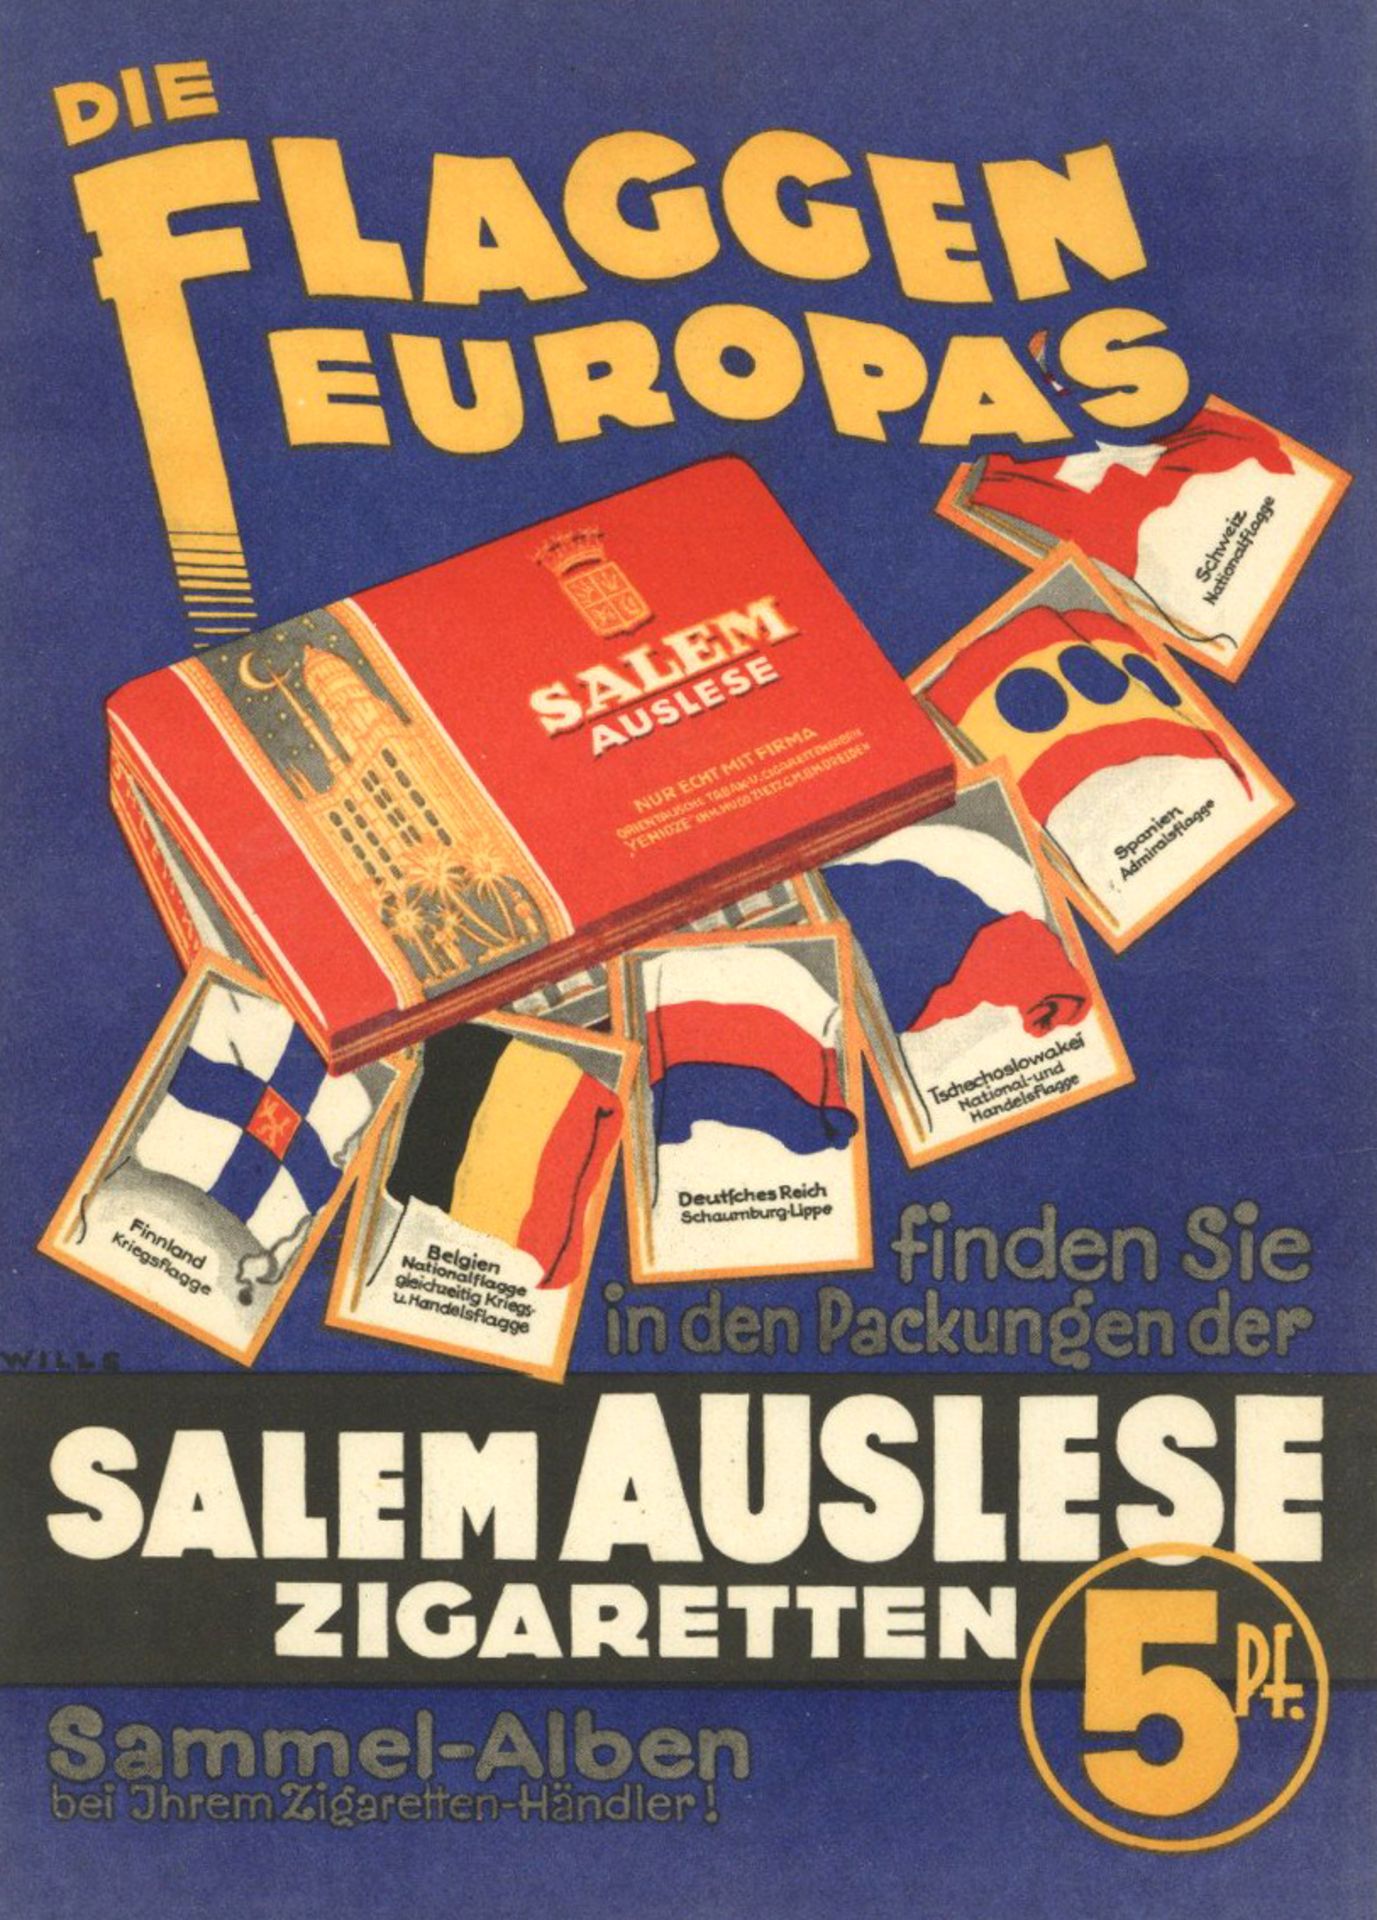 Sammelbild-Album Flyer SALEM Auslese Die Flaggen Europas I-II